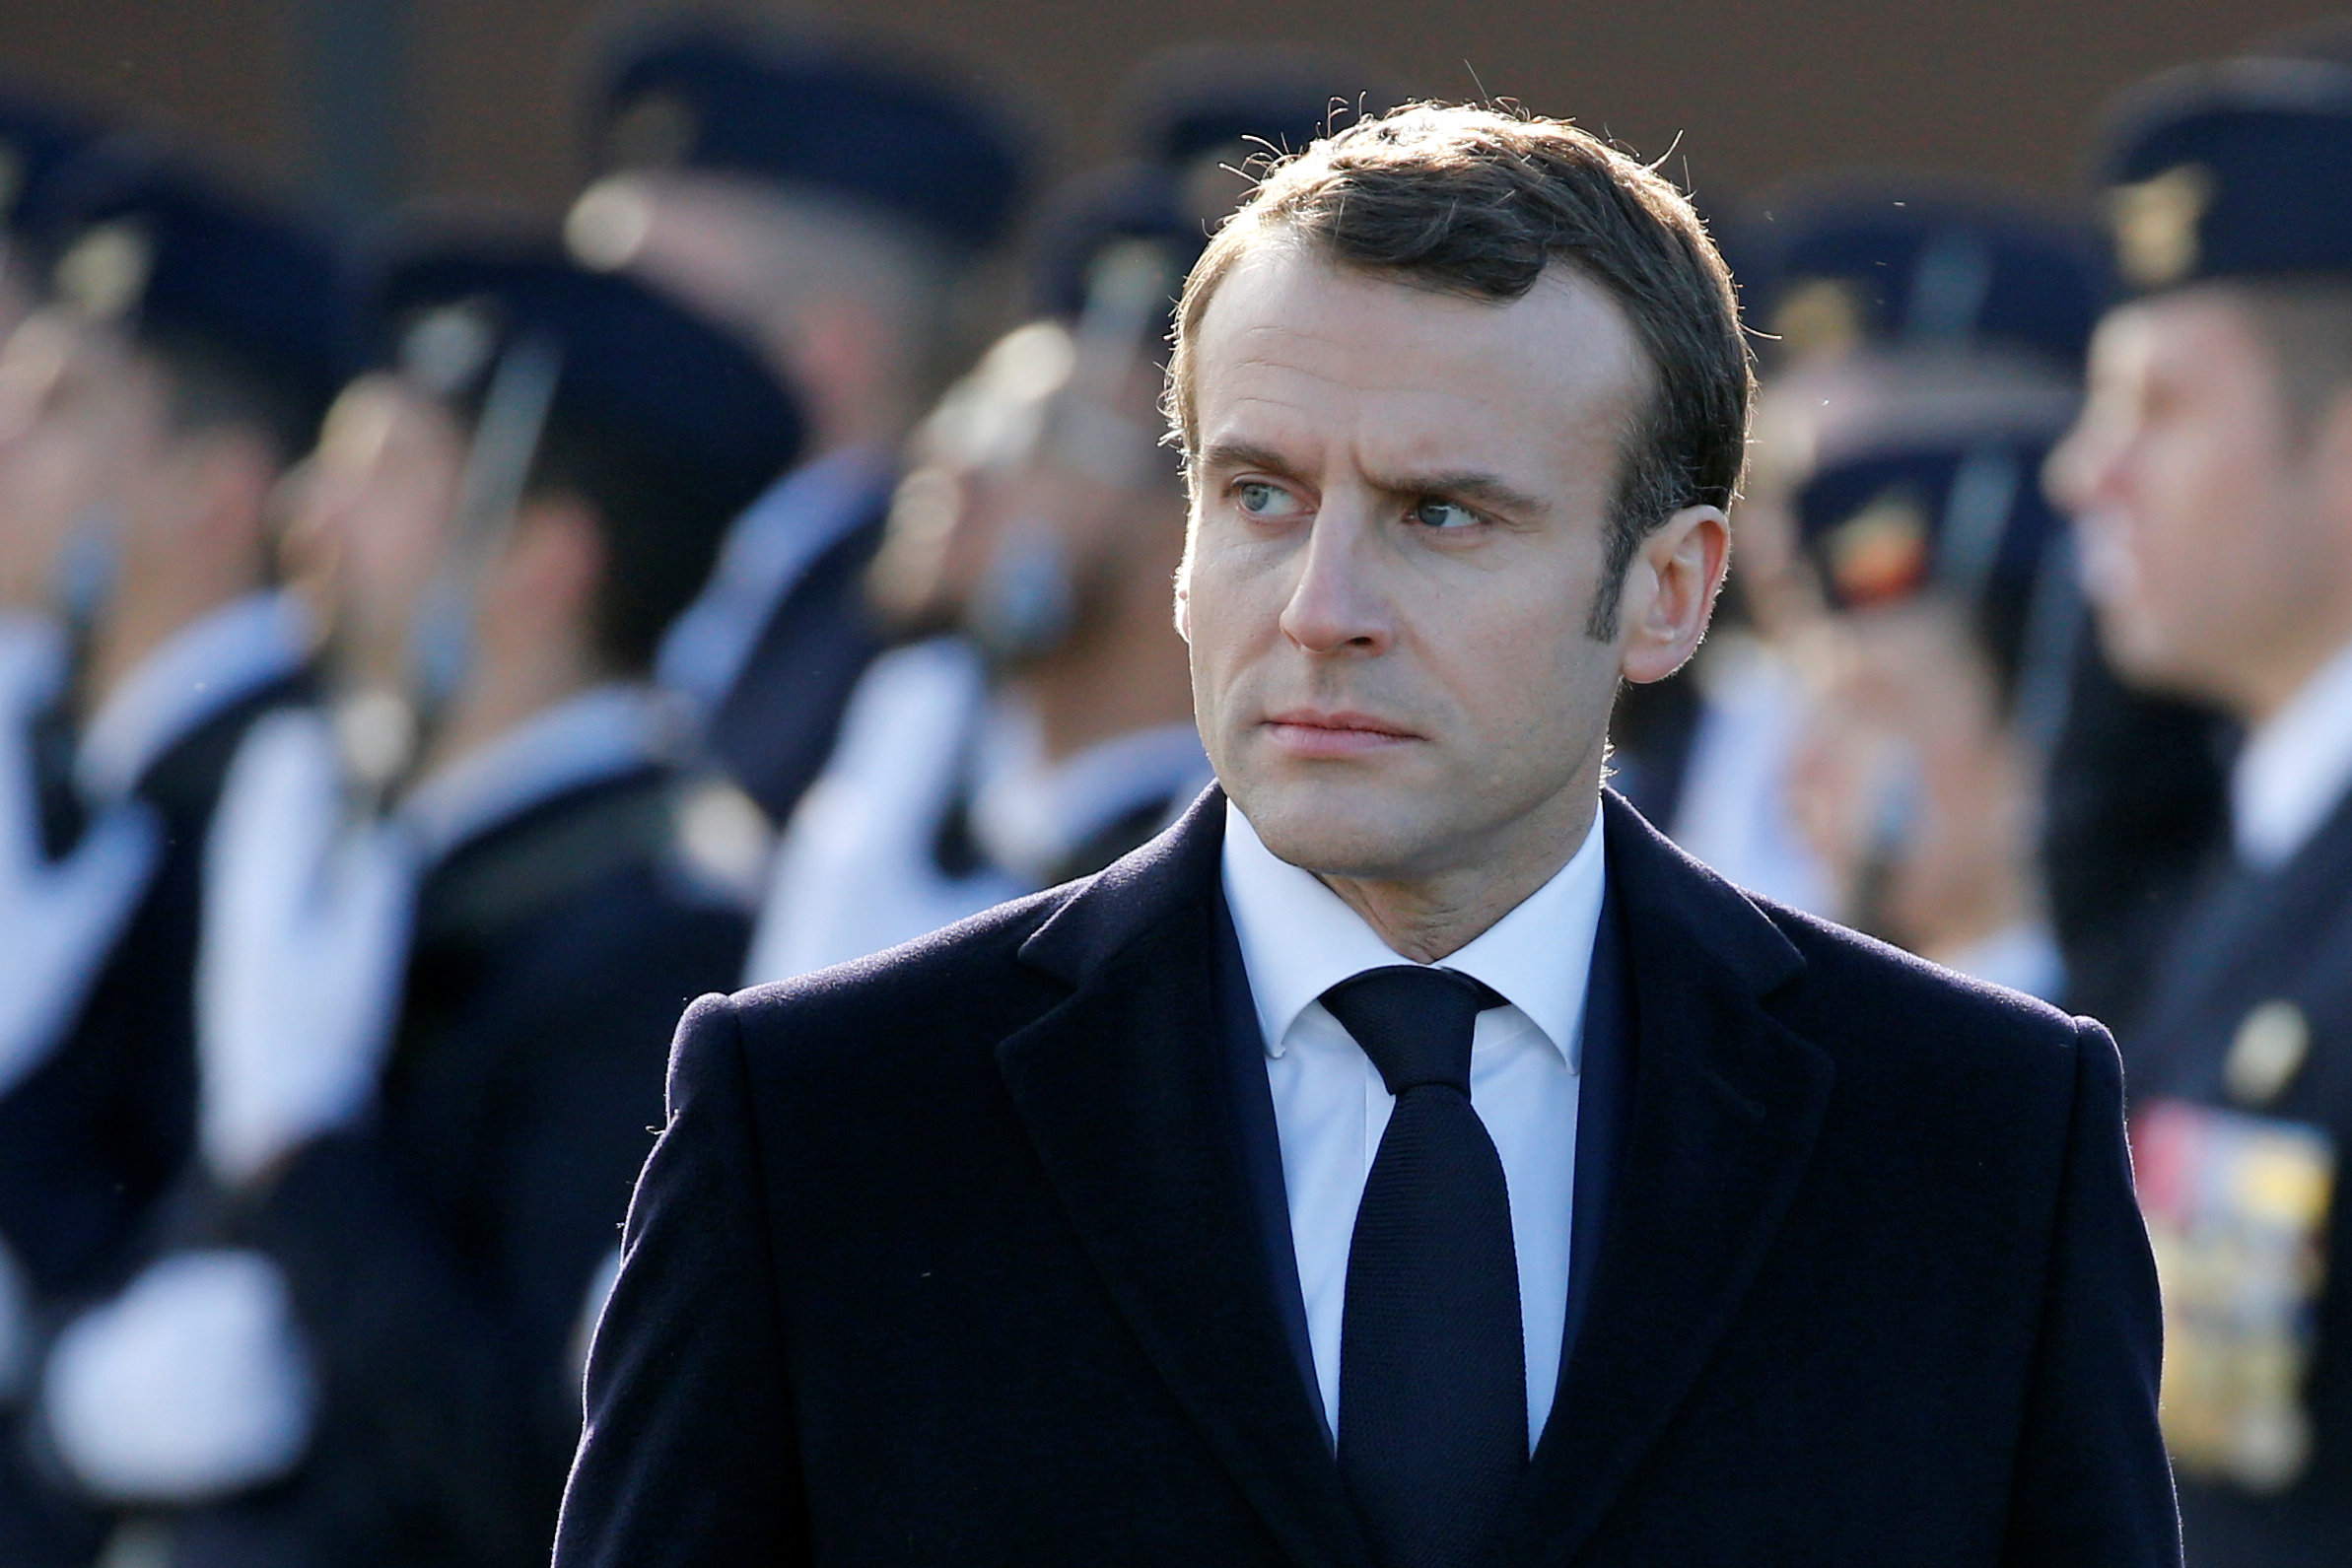 Detenido el exjefe de seguridad de Macron por falsificación de documentos